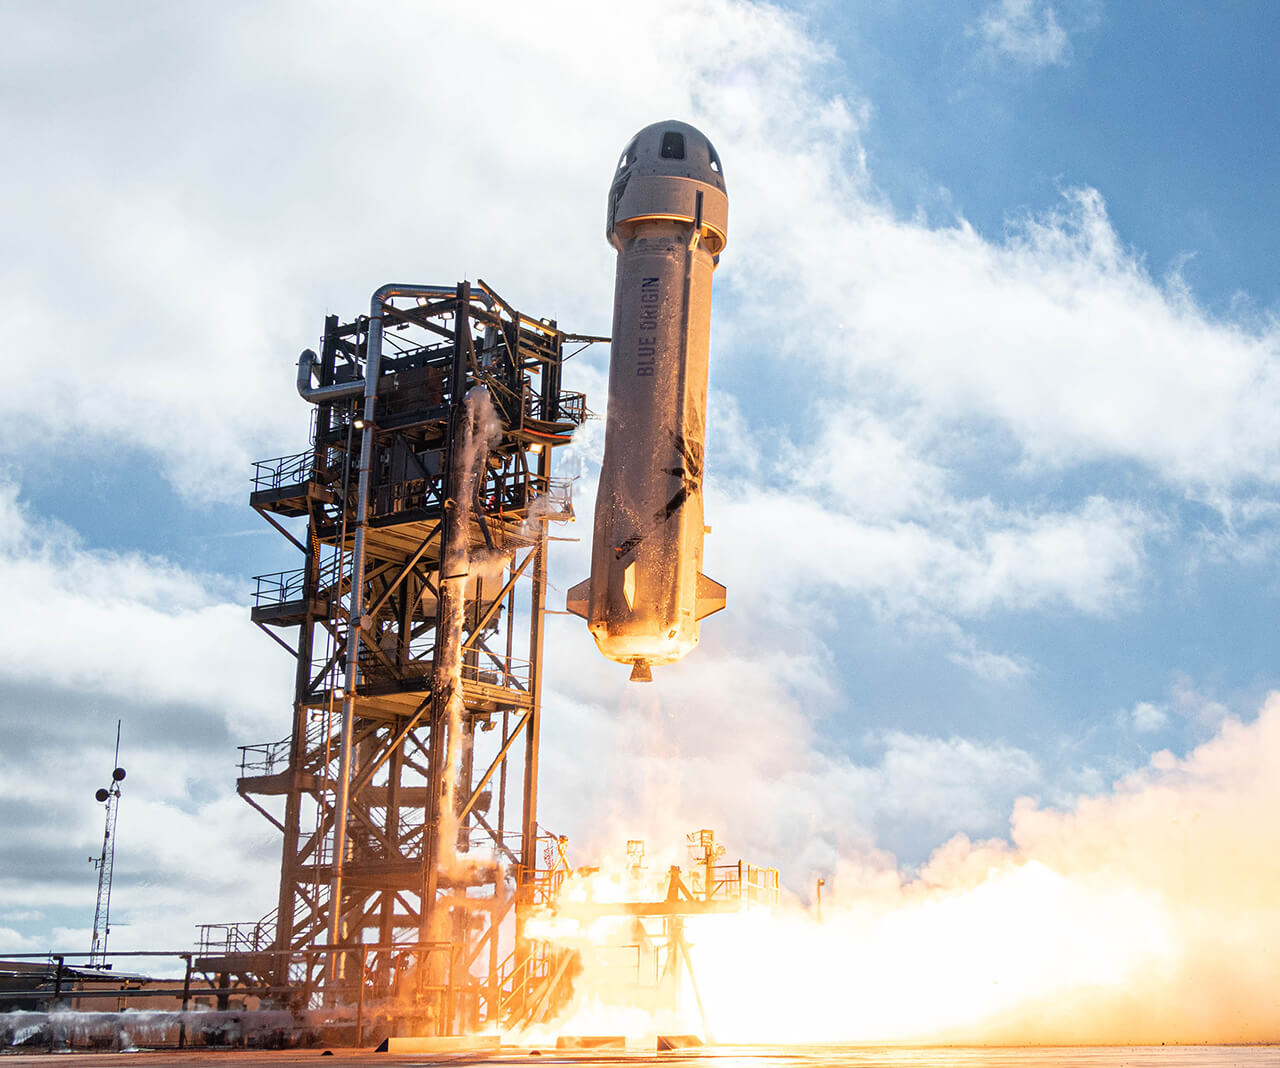 Amazon.comの設立者であるジェフ・ベゾスが設立した航空宇宙企業「ブルー・オリジン」のニューシェパード打ち上げ。2019年12月11日、アメリカ・テキサス州 /（提供Blue Origin）